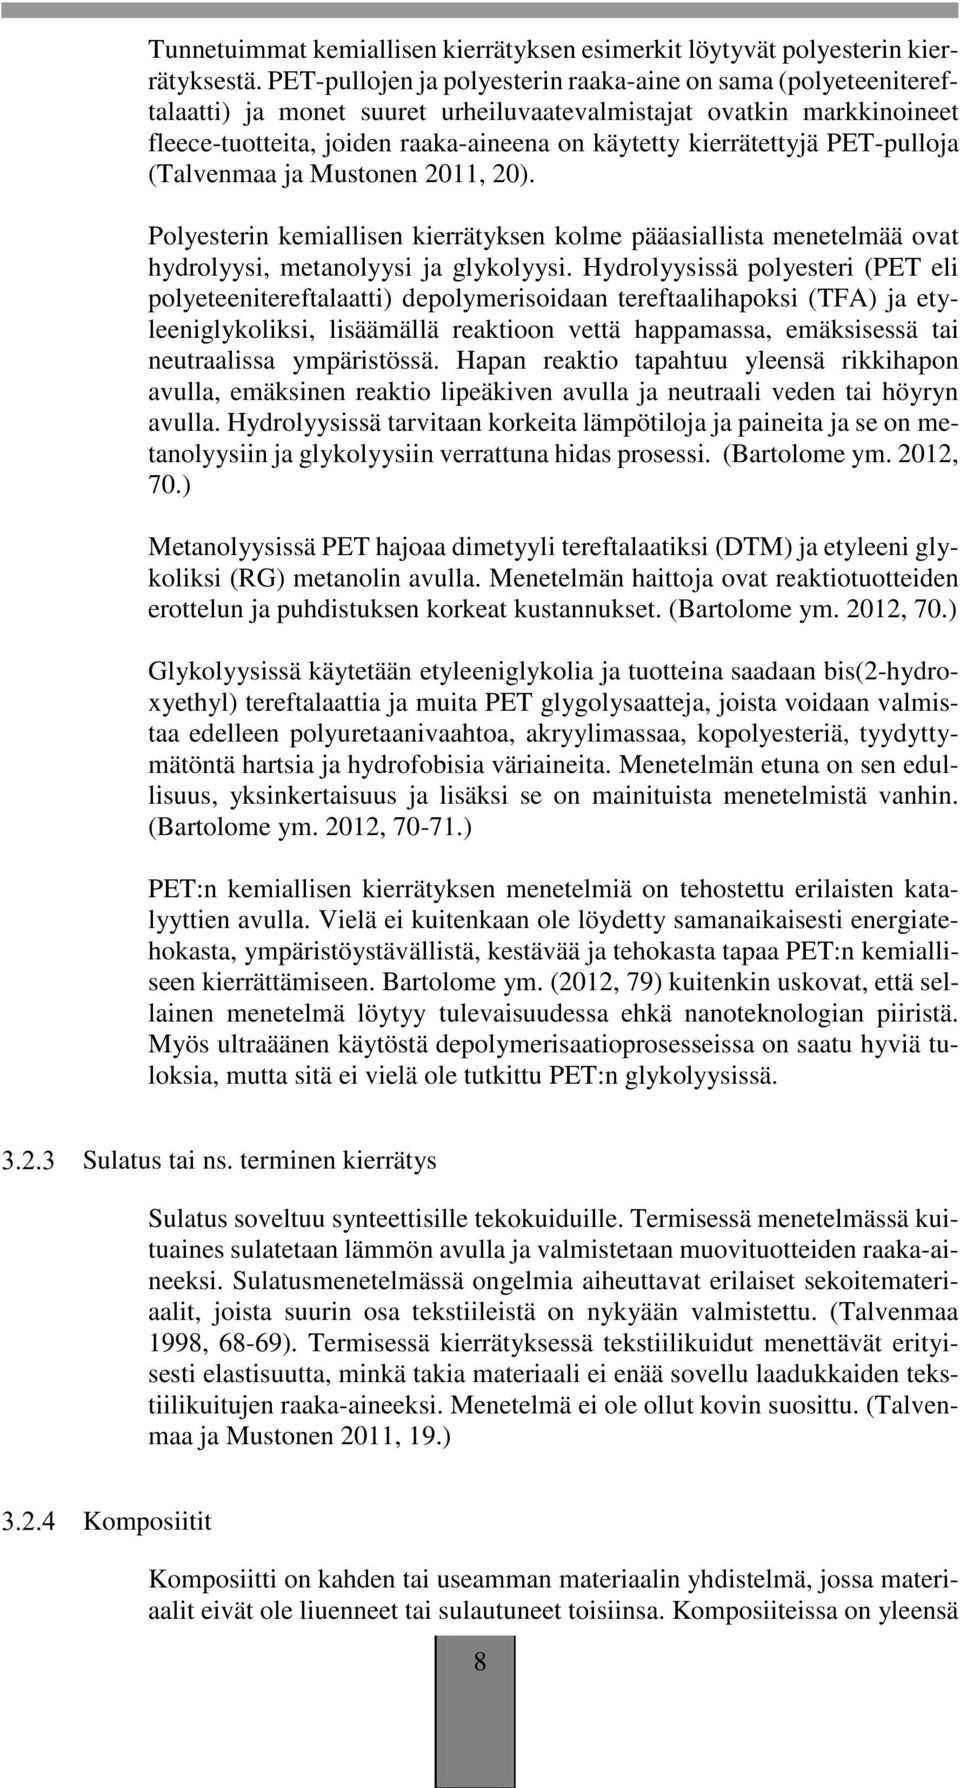 PET-pulloja (Talvenmaa ja Mustonen 2011, 20). Polyesterin kemiallisen kierrätyksen kolme pääasiallista menetelmää ovat hydrolyysi, metanolyysi ja glykolyysi.